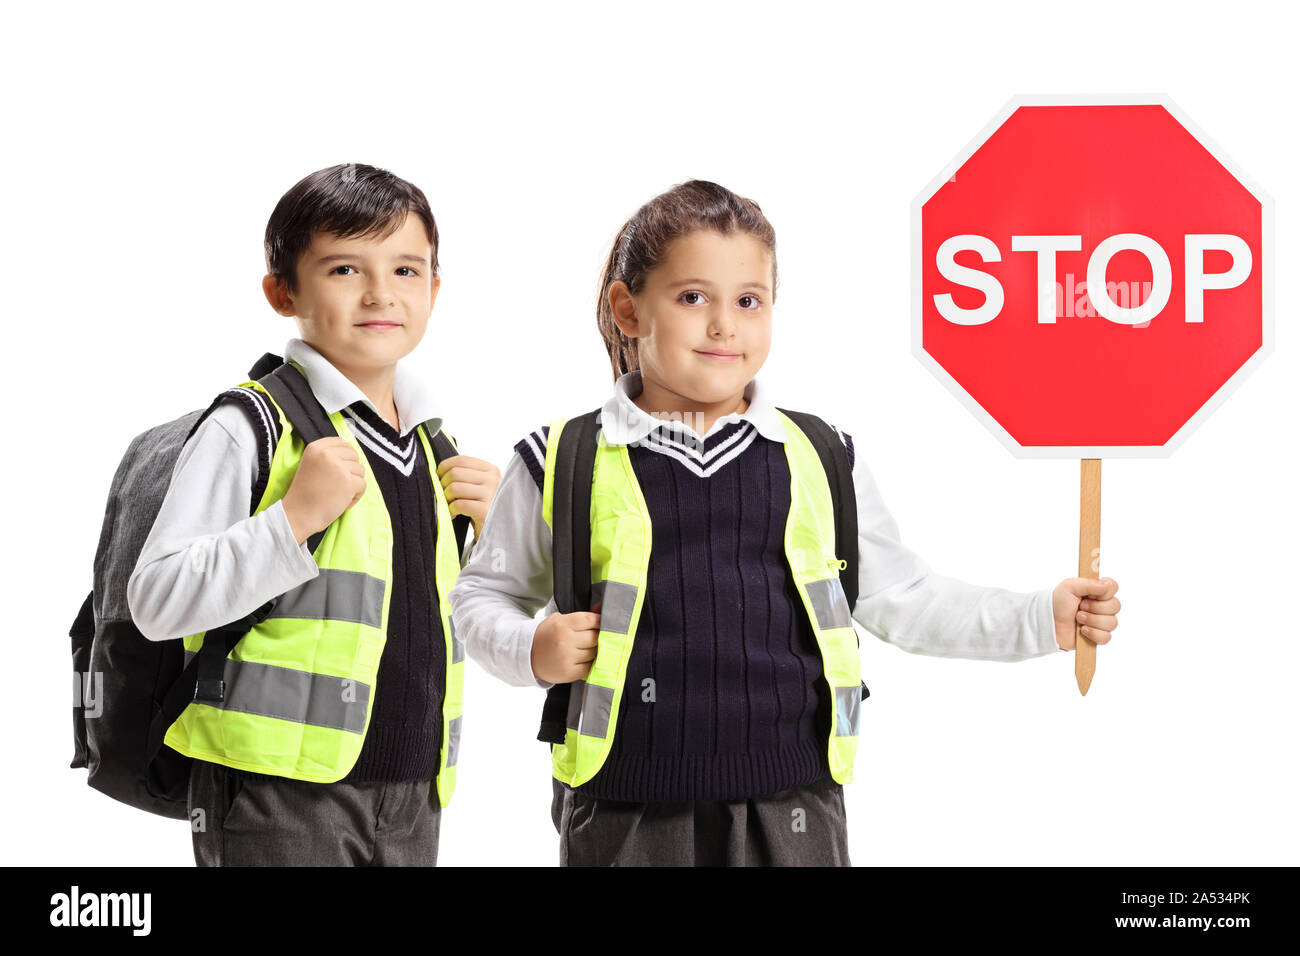 Gli scolari con giubbotti di sicurezza e di un segnale di stop isolato su sfondo bianco Foto Stock